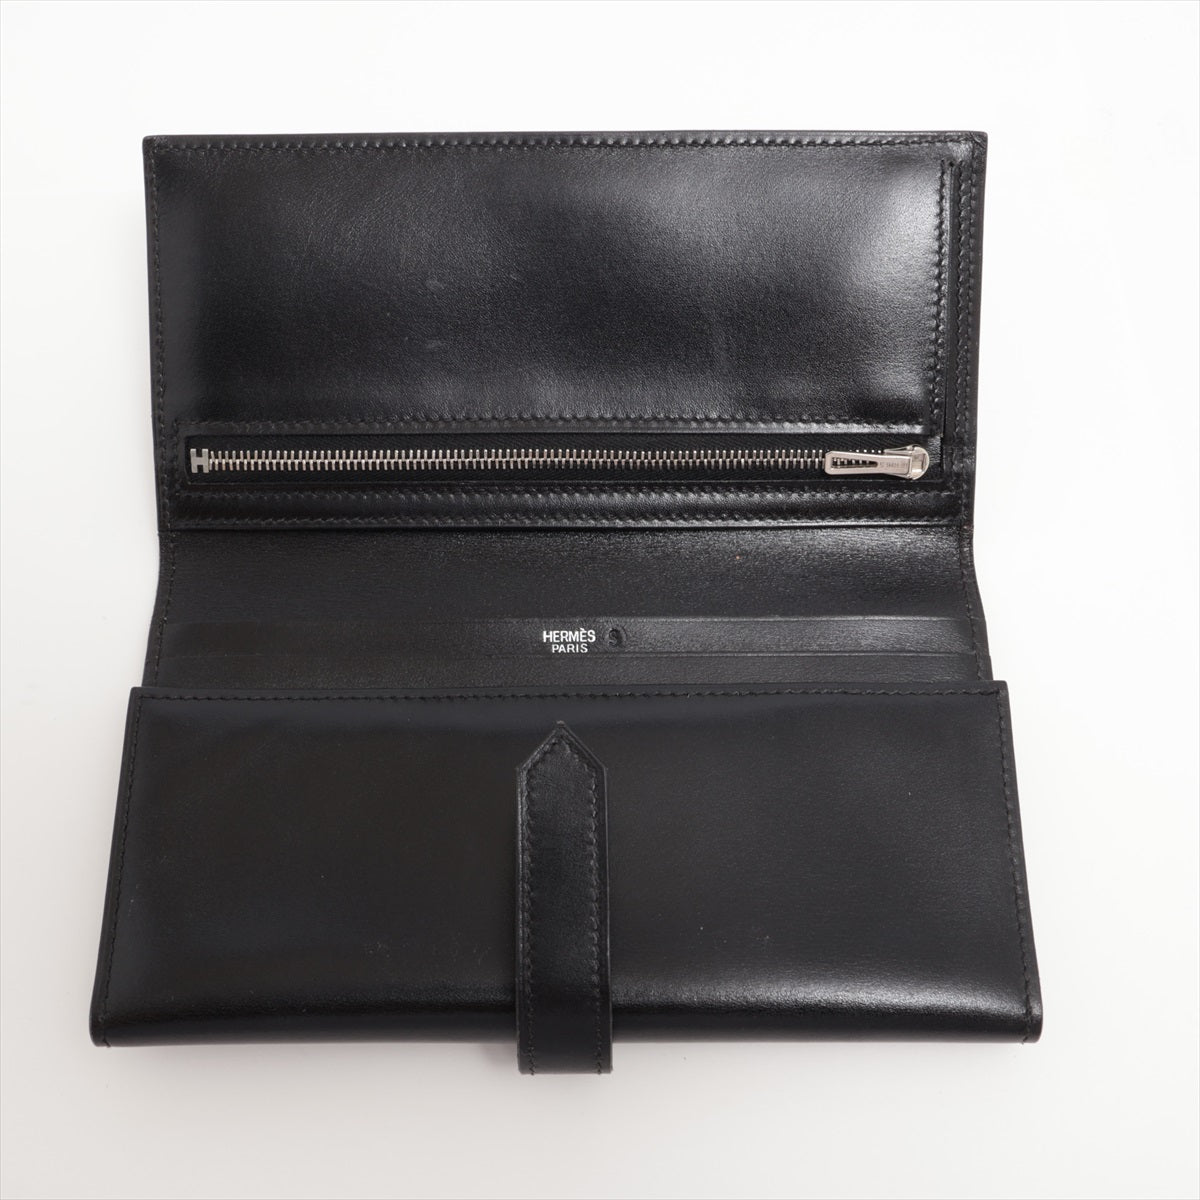 エルメス ベアン デュプリ ボックスカーフ 財布 ブラック シルバー金具 □L:2008年 ソルド品